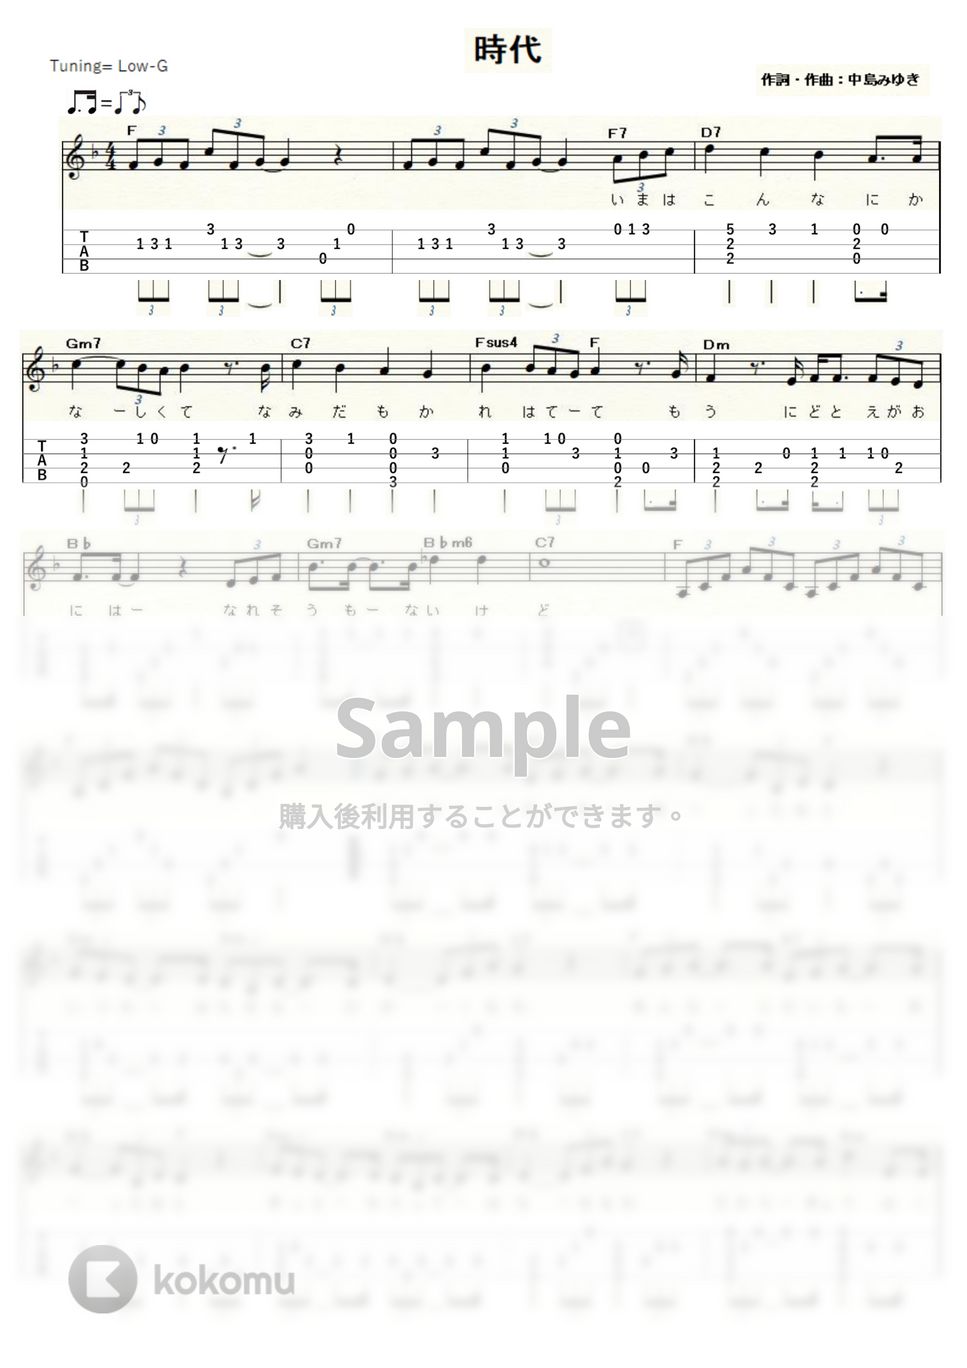 中島みゆき - 時代 (ｳｸﾚﾚｿﾛ / Low-G / 中級～上級) by ukulelepapa